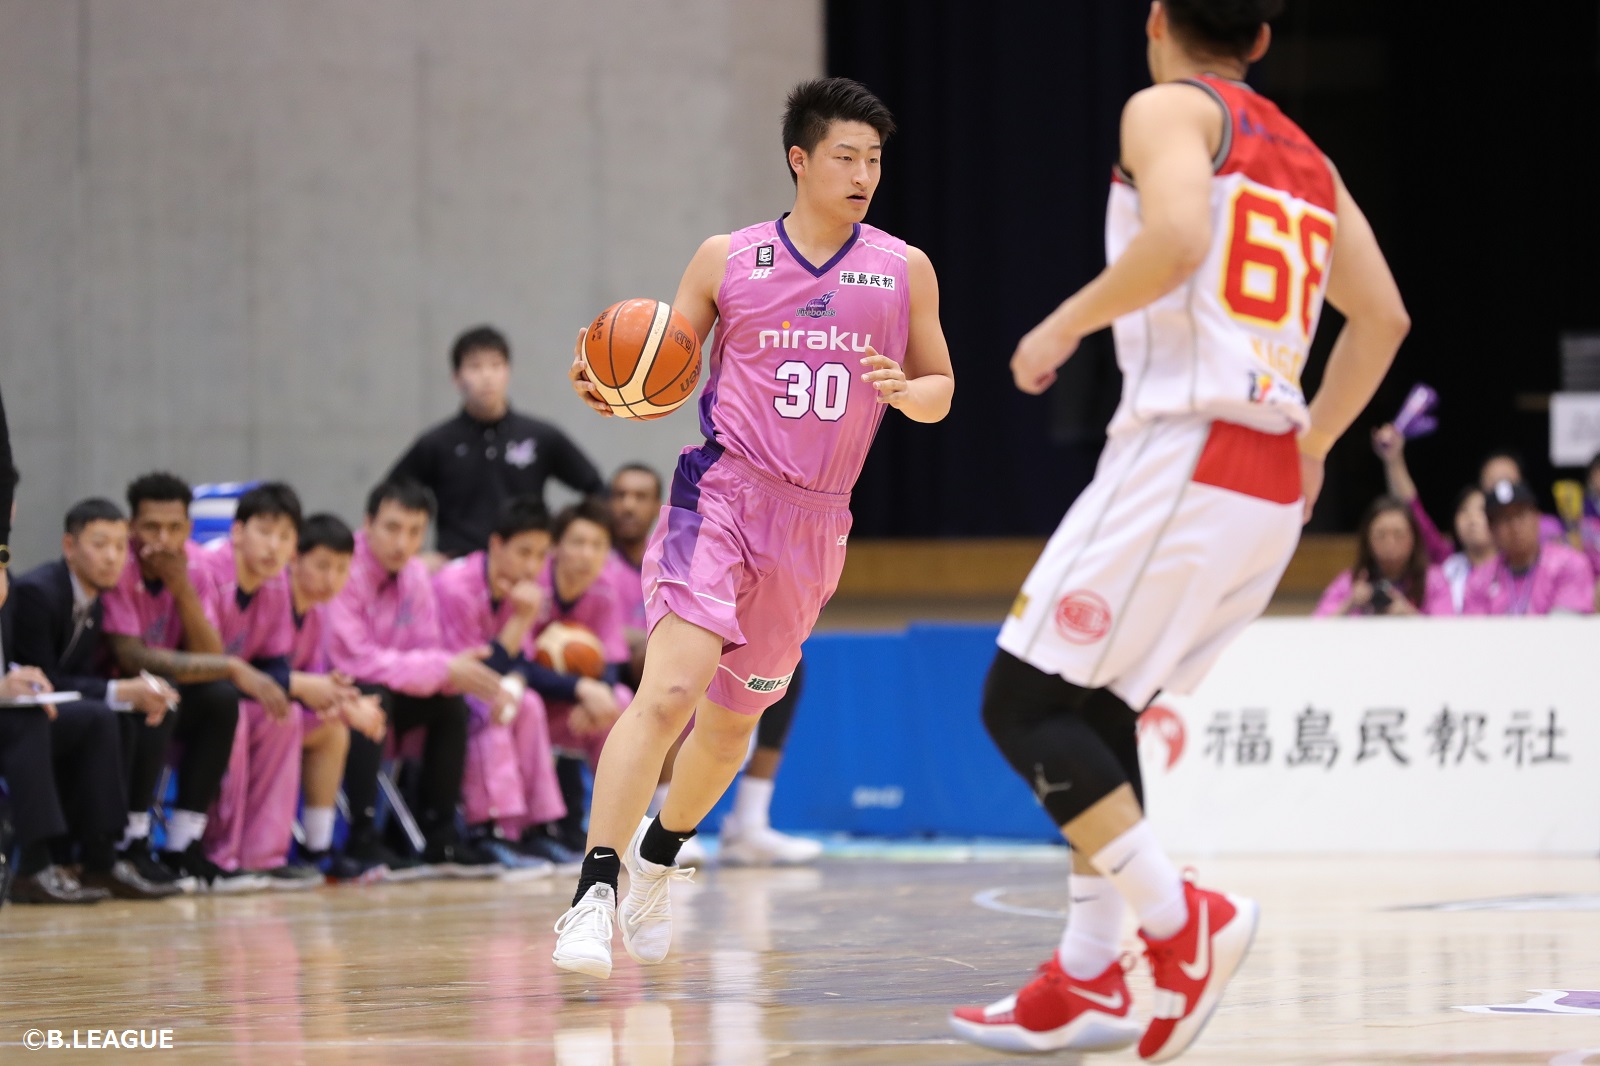 法政大学の水野幹太 川崎ブレイブサンダースに特別指定選手として加入 若手らしくエナジーを出す バスケットボールキング